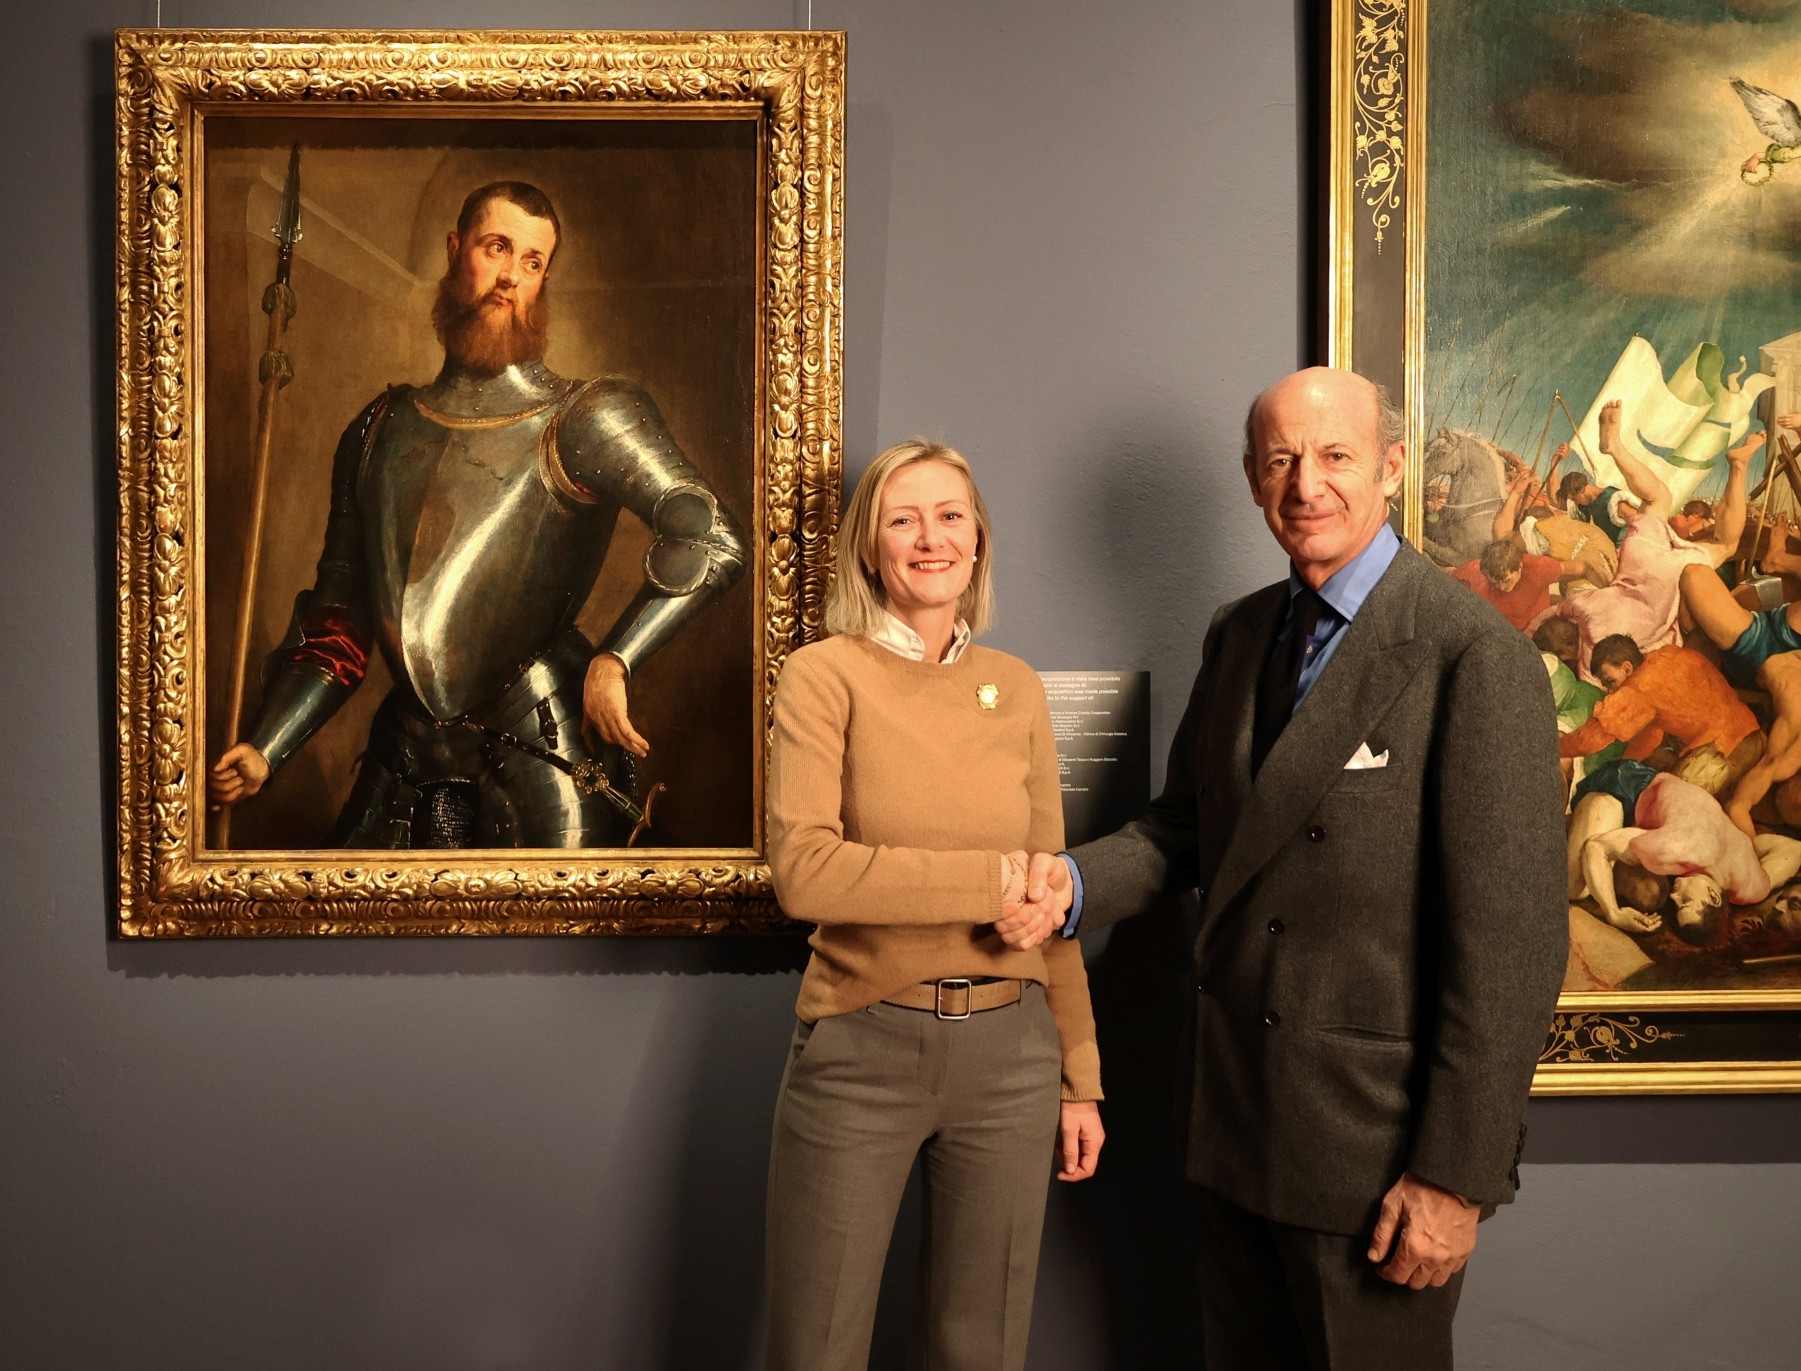 Musei Civici di Bassano del Grappa acquires 'Portrait of a Man in Armour' by Jacopo Bassano